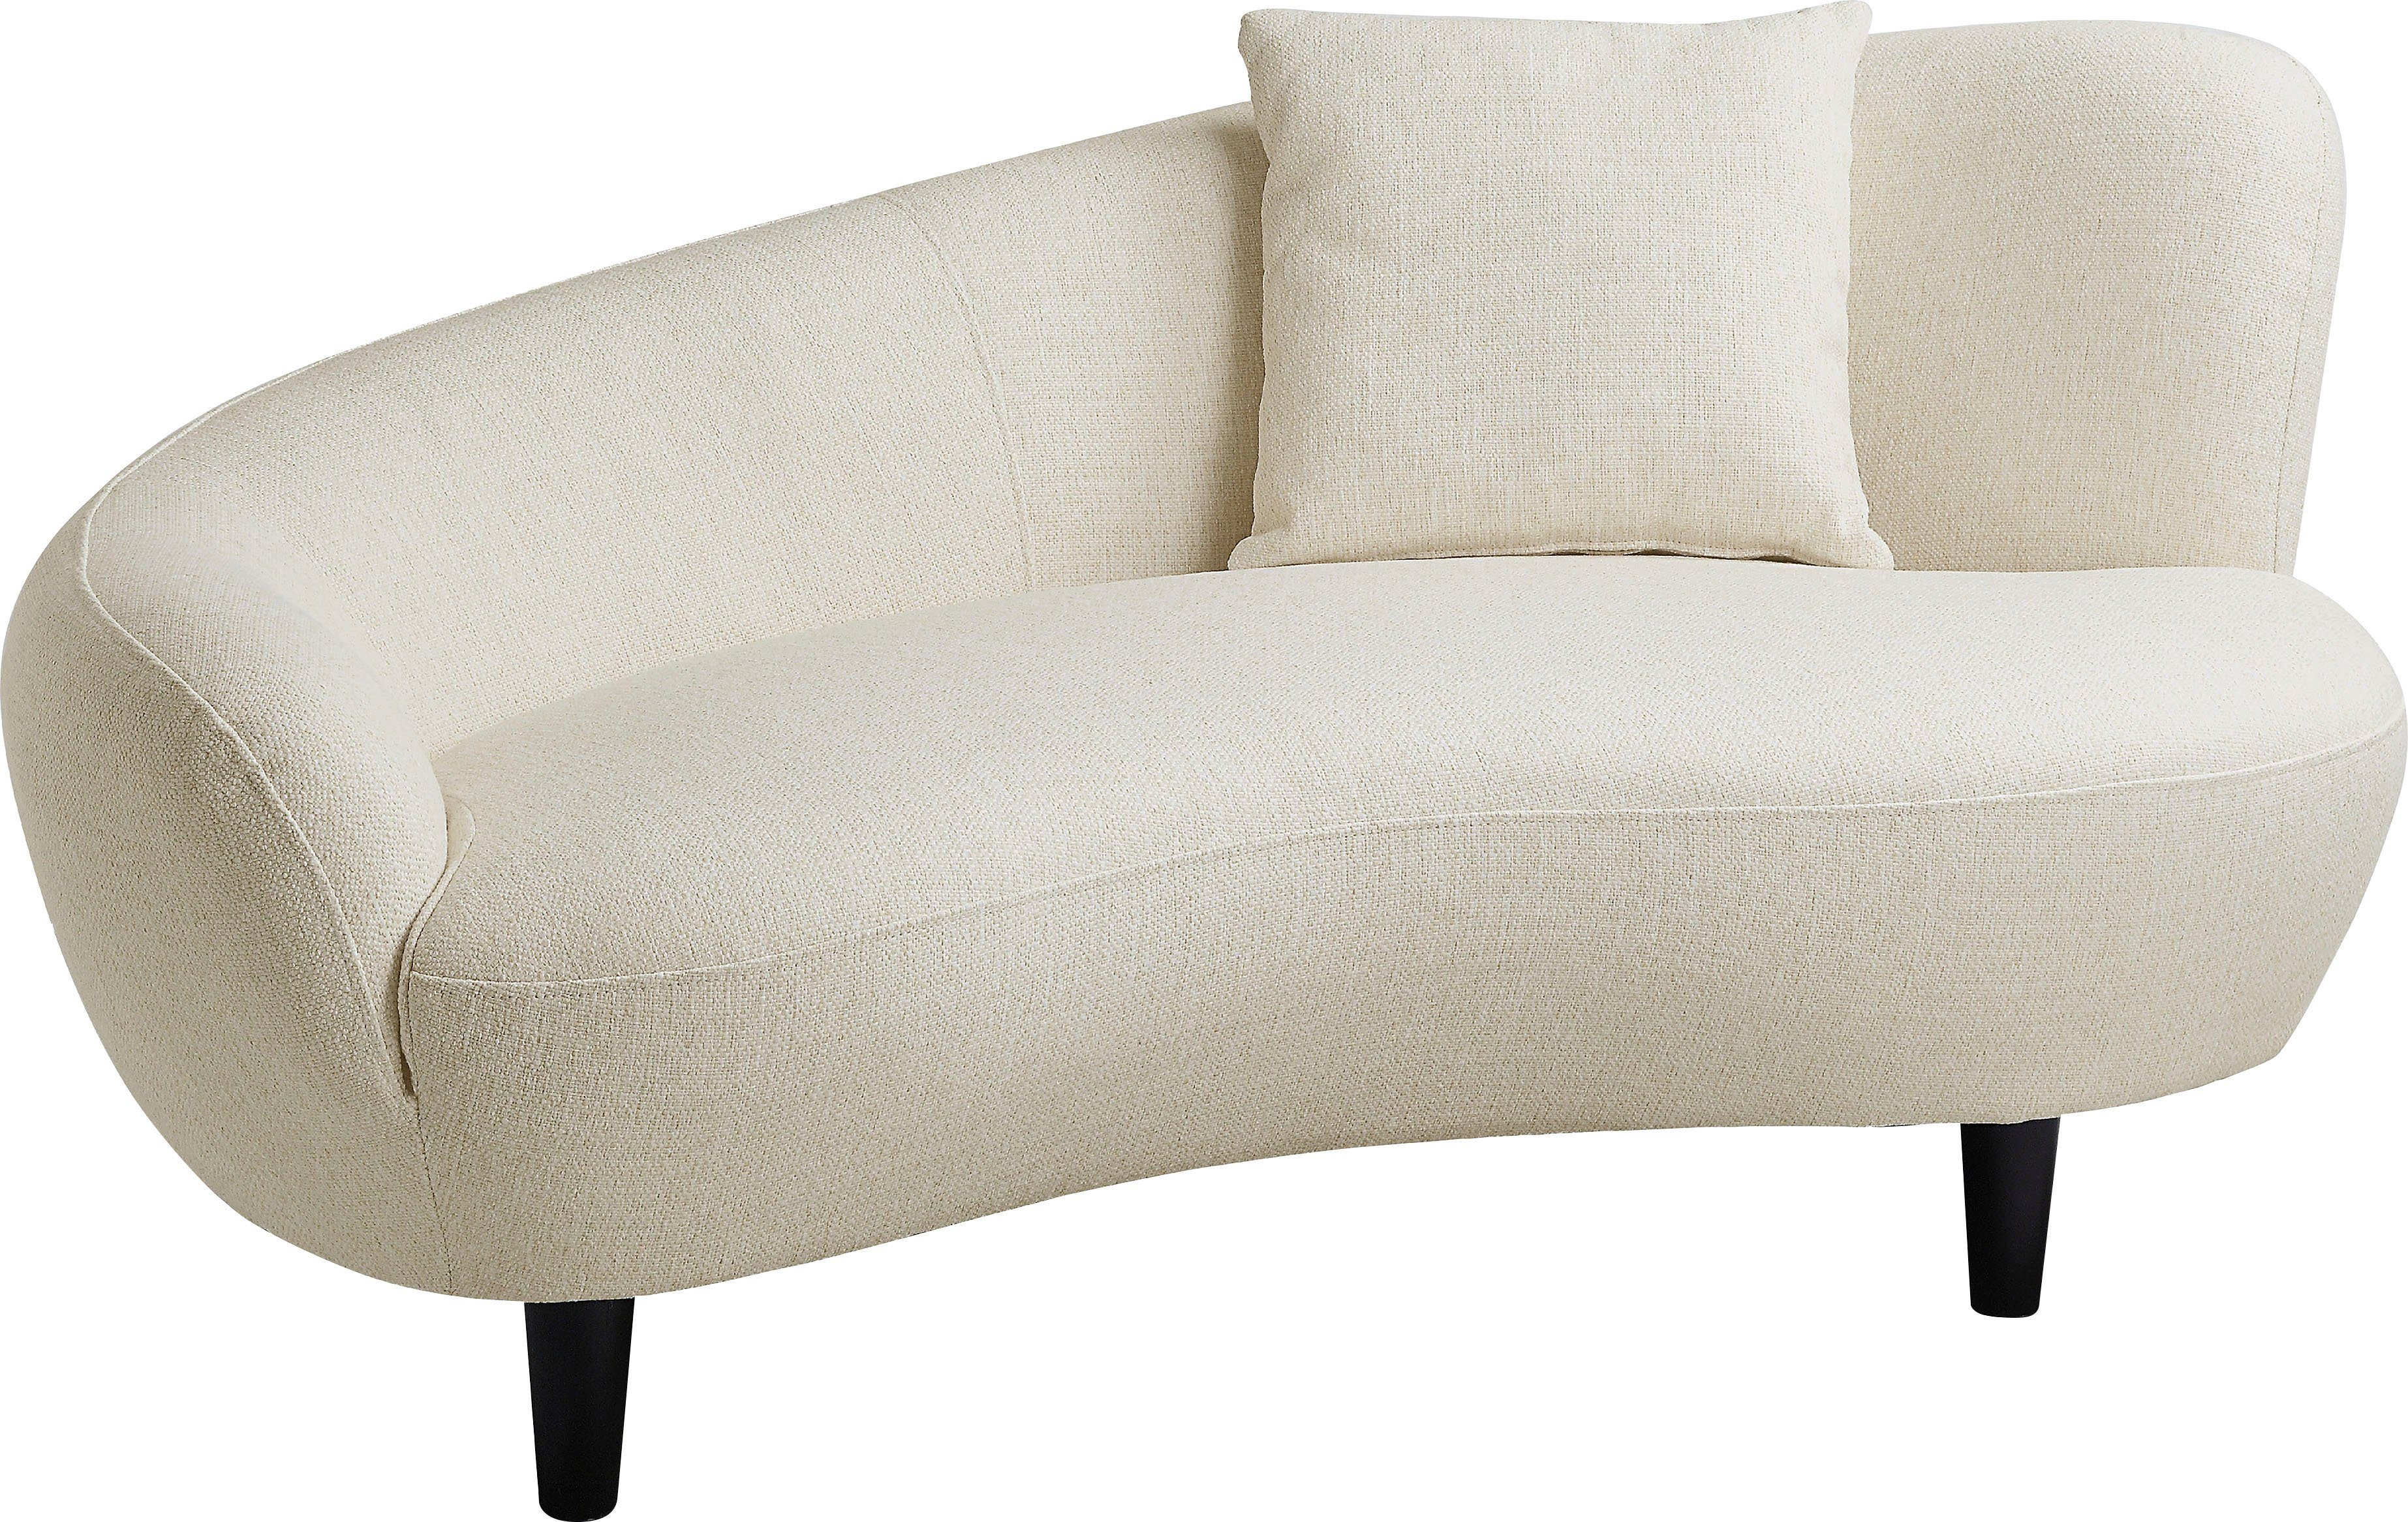 ATLANTIC home collection Chaiselongue Olivia, Nierenform-Sofa mit  Zierkissen im Originalbezug, Wellenunterfederung für besonders hohen  Sitzkomfort